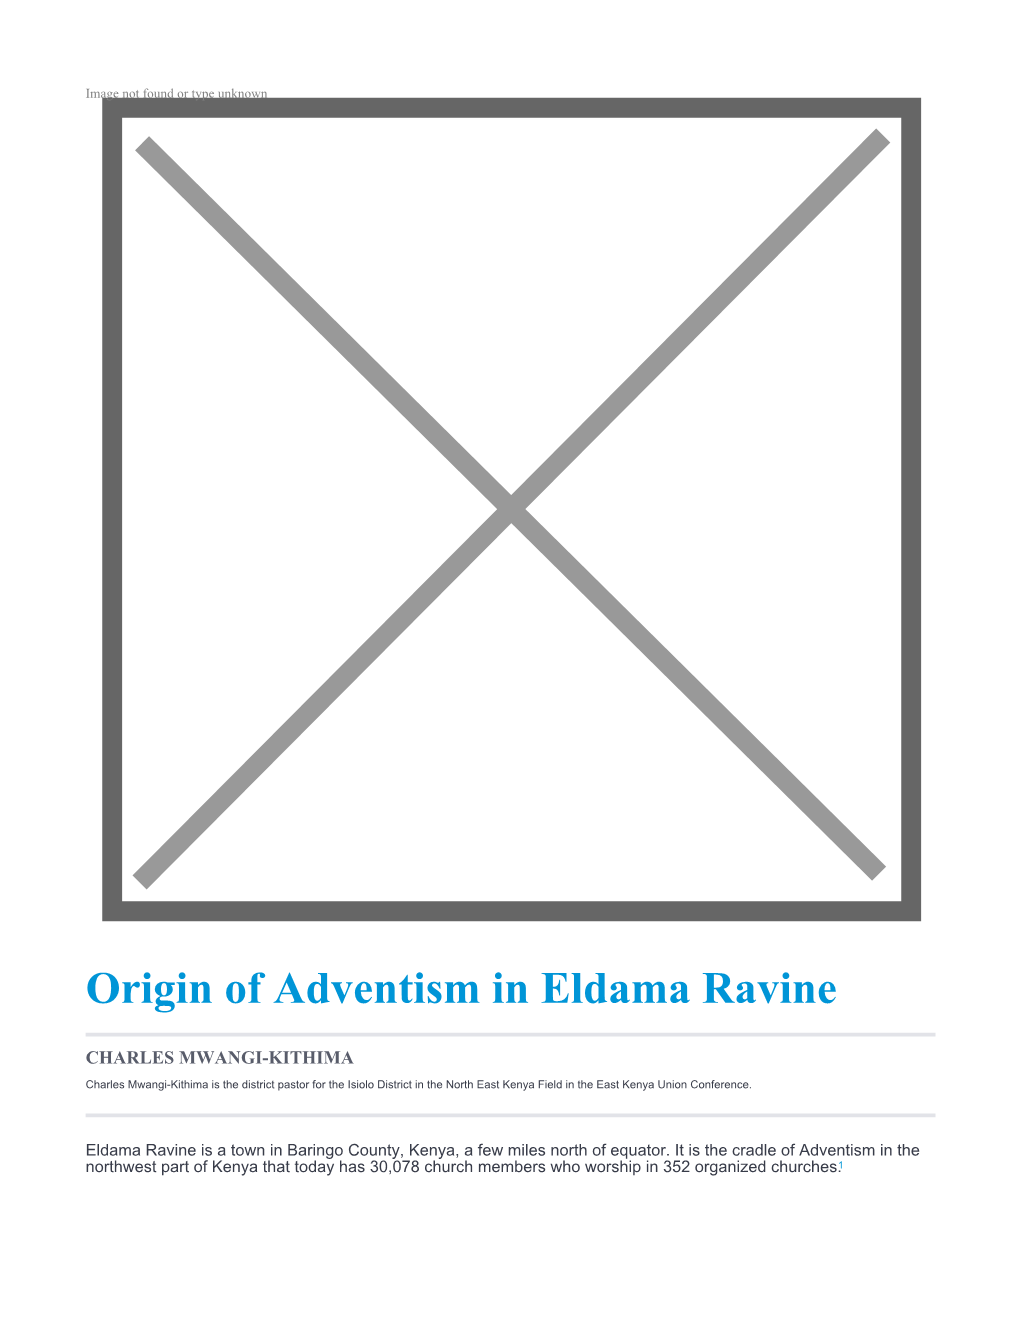 Origin of Adventism in Eldama Ravine